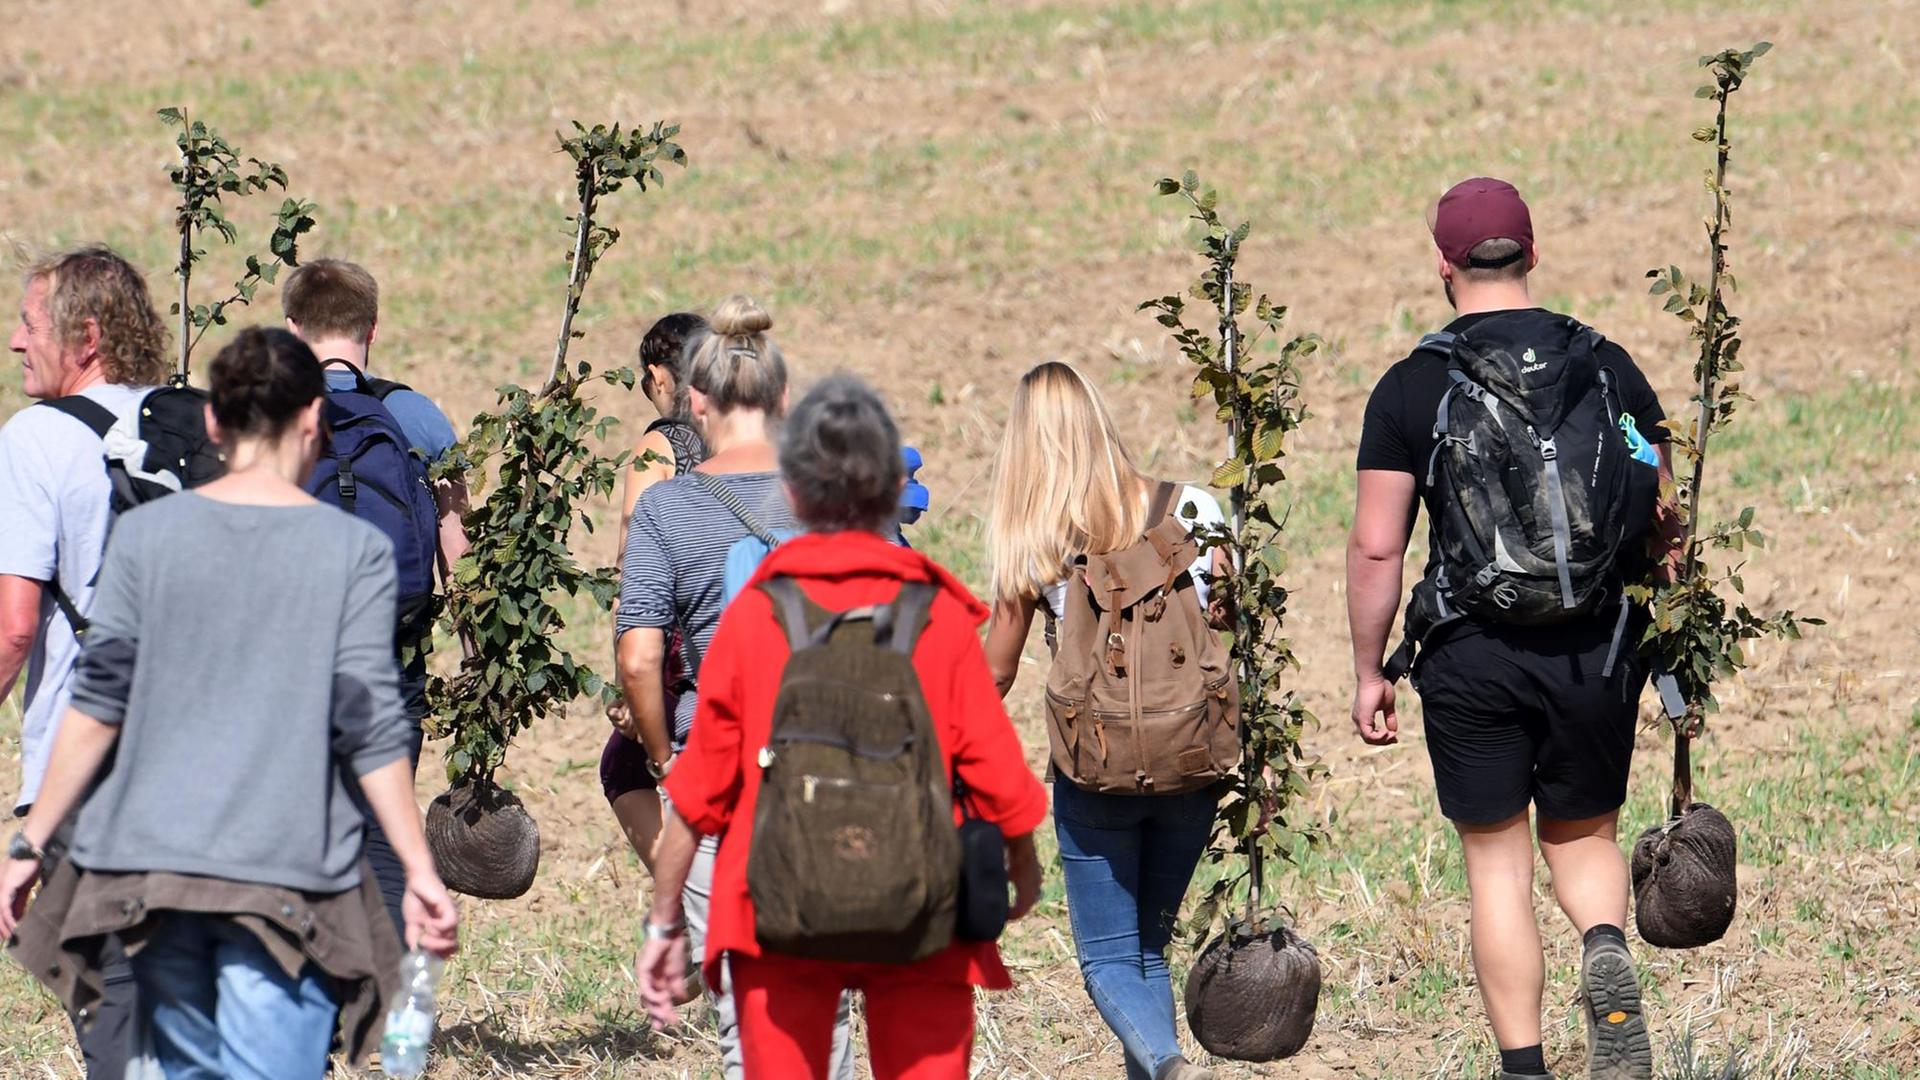 Teilnehmer einer Demonstration am Hambacher Forst tragen Baumsetzlinge, die sie auf dem gerodeten Teil des Forstes anpflanzen wollen.